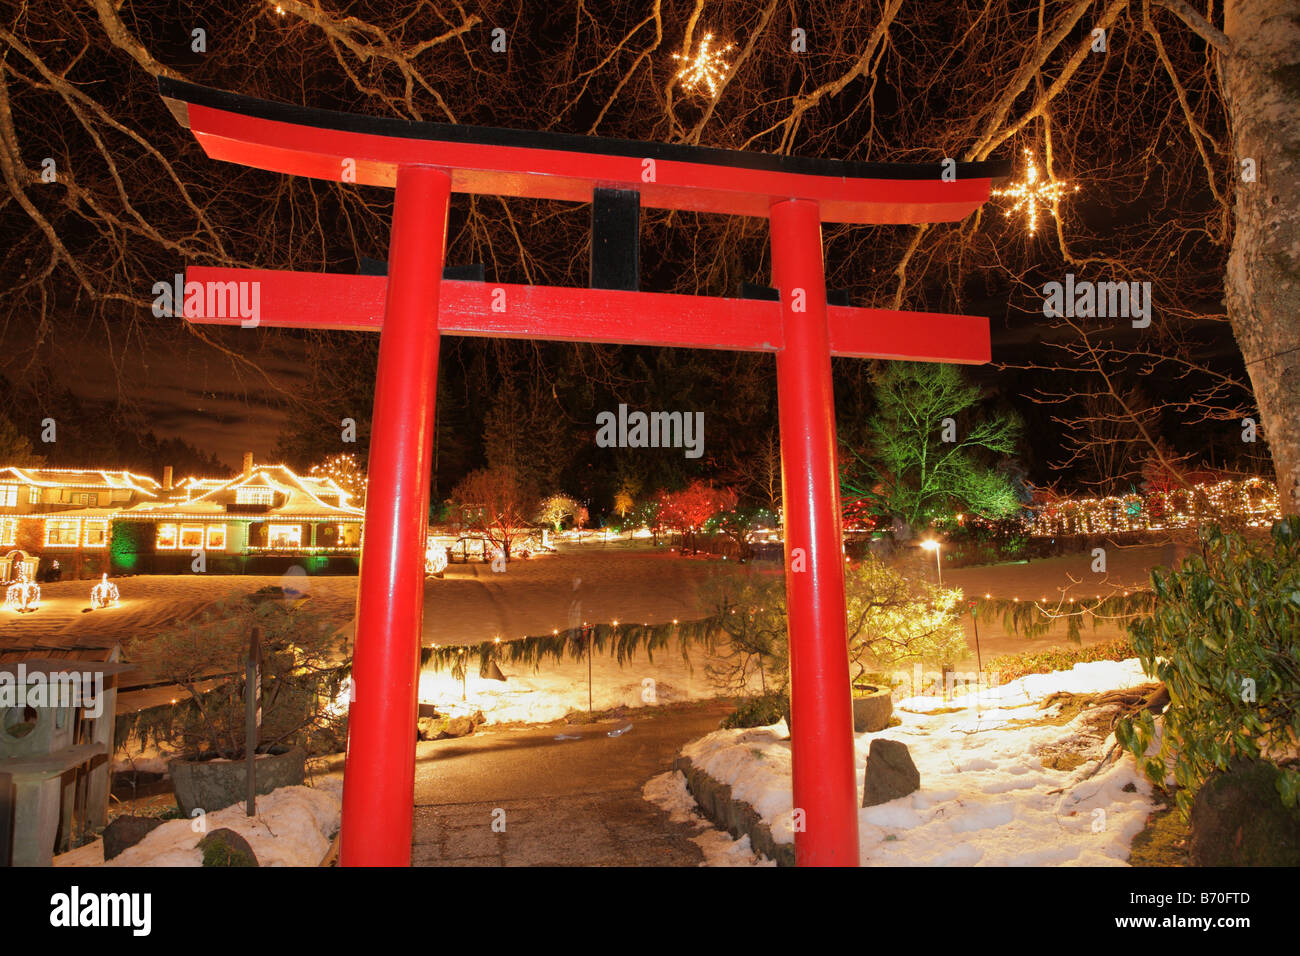 Japanischer Garten Eingang mit Weihnachtsbeleuchtung in der Nacht Butchart Gardens Victoria British Columbia Kanada Stockfoto